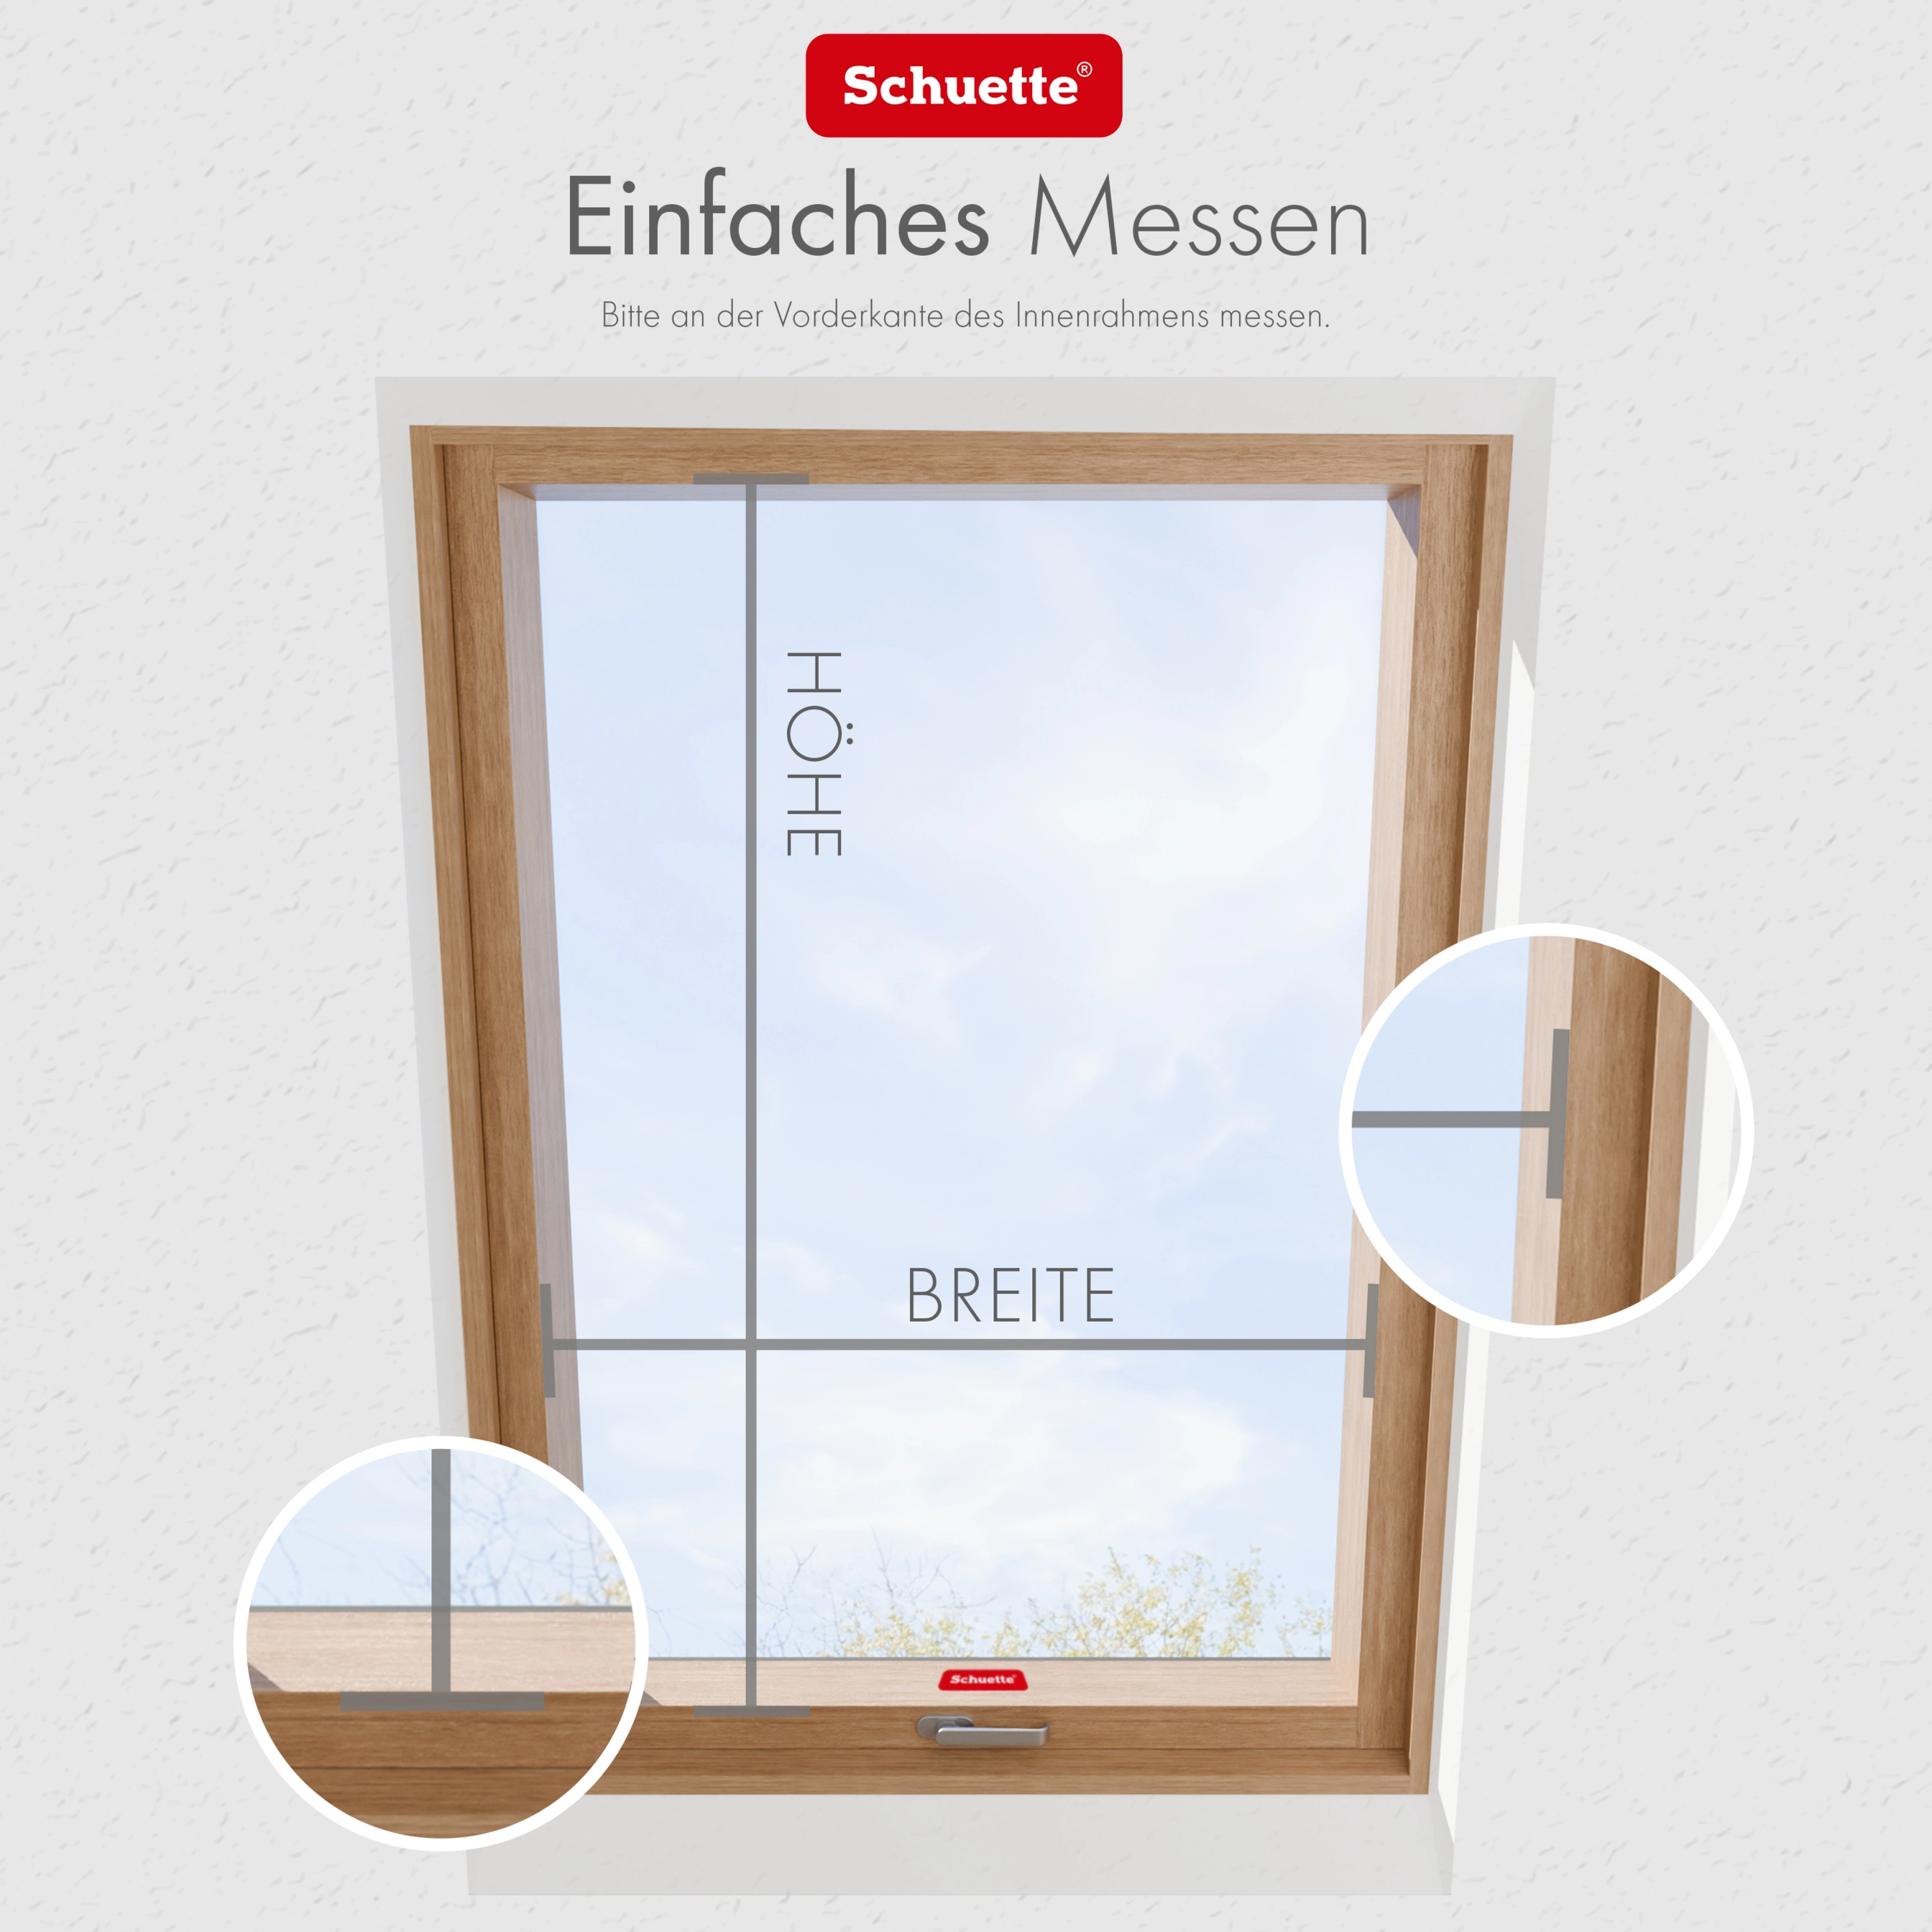 Schuette® Dachfenster Plissee nach Maß • Thermo Kollektion: Leaf Joy (Grün) • Profilfarbe: Weiß